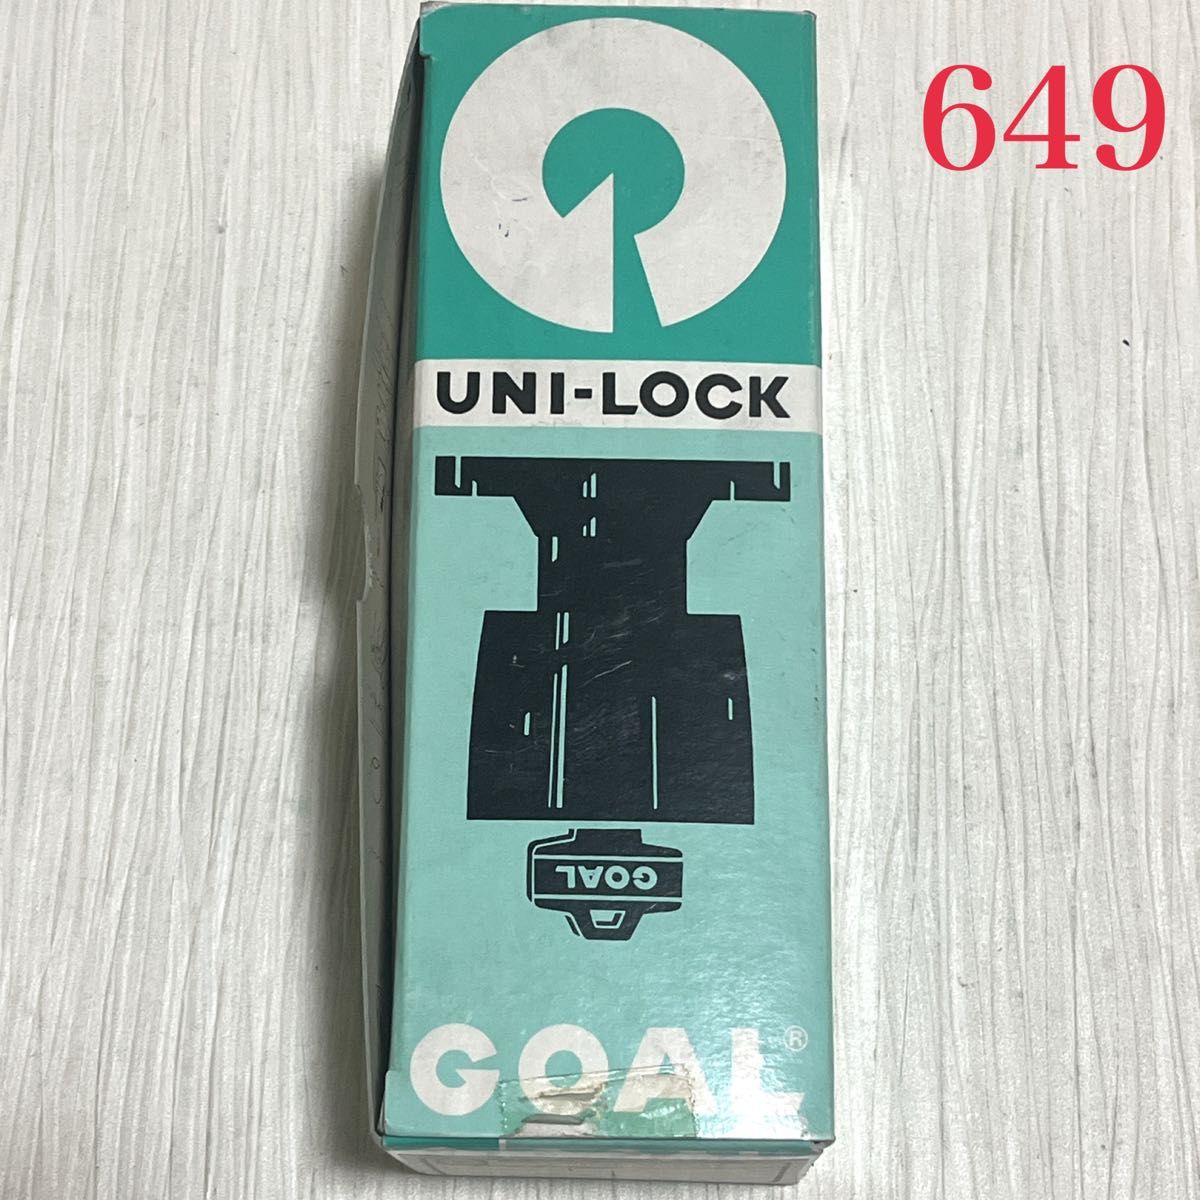 【649】GOAL ULW 5E シリンダー付室内錠 ガードプレート付 キー３本